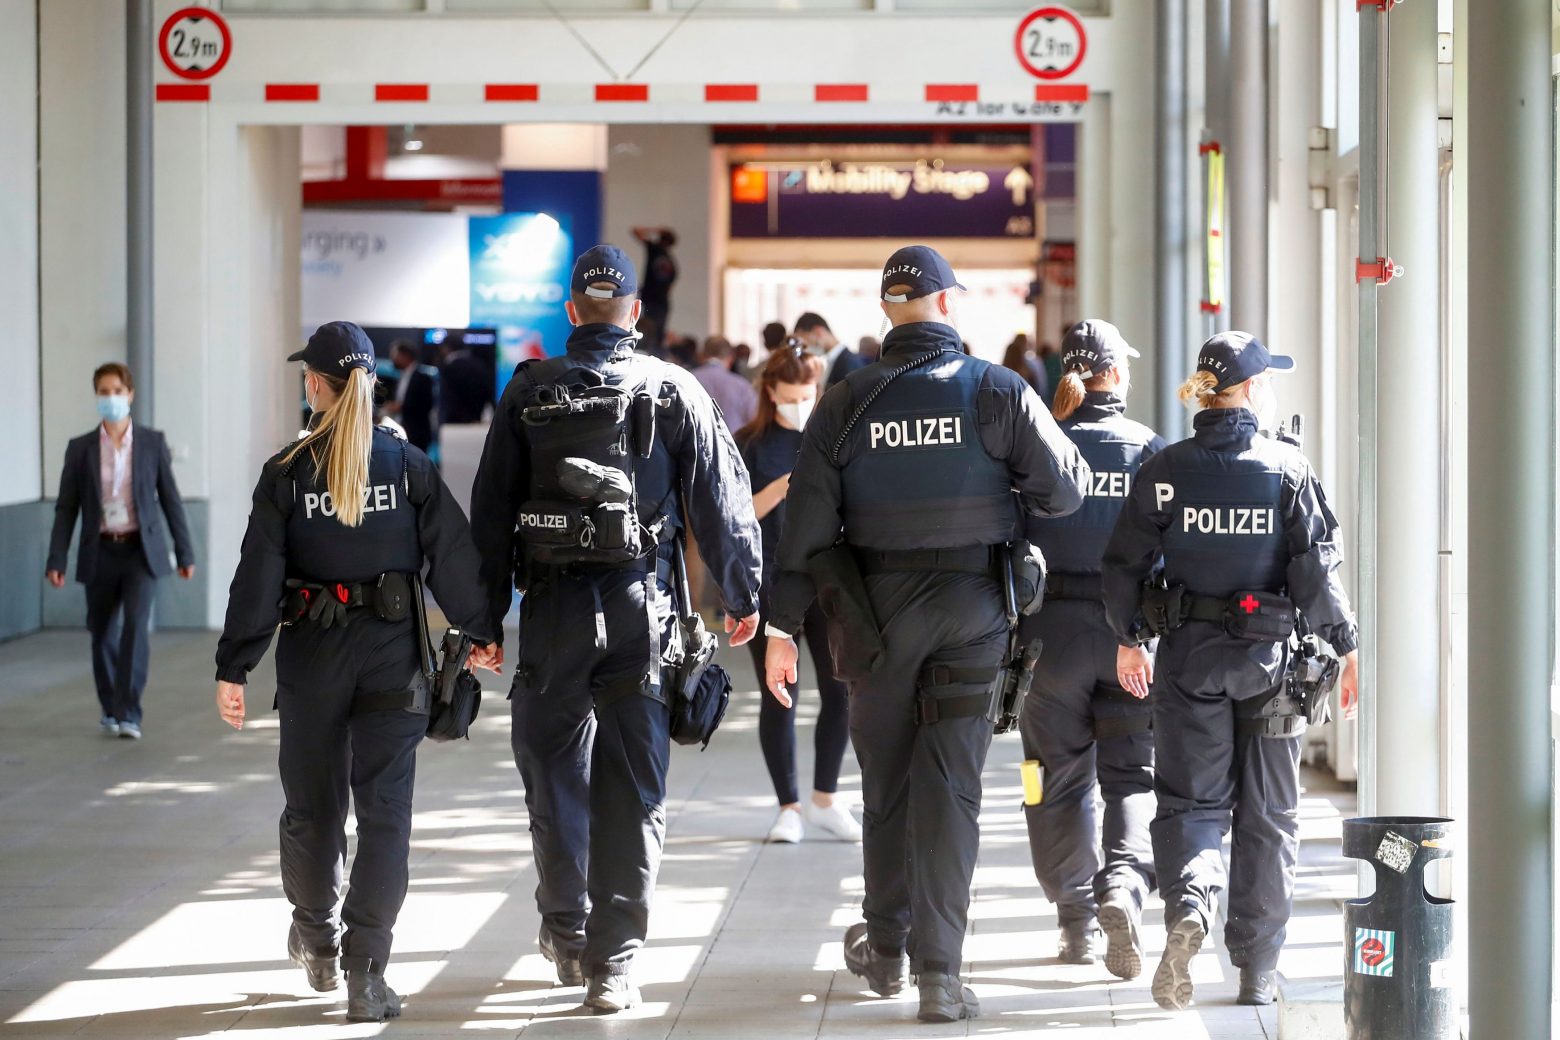 Γερμανία - Απετράπη τρομοκρατική επίθεση σε συναγωγή στο Χάγκεν